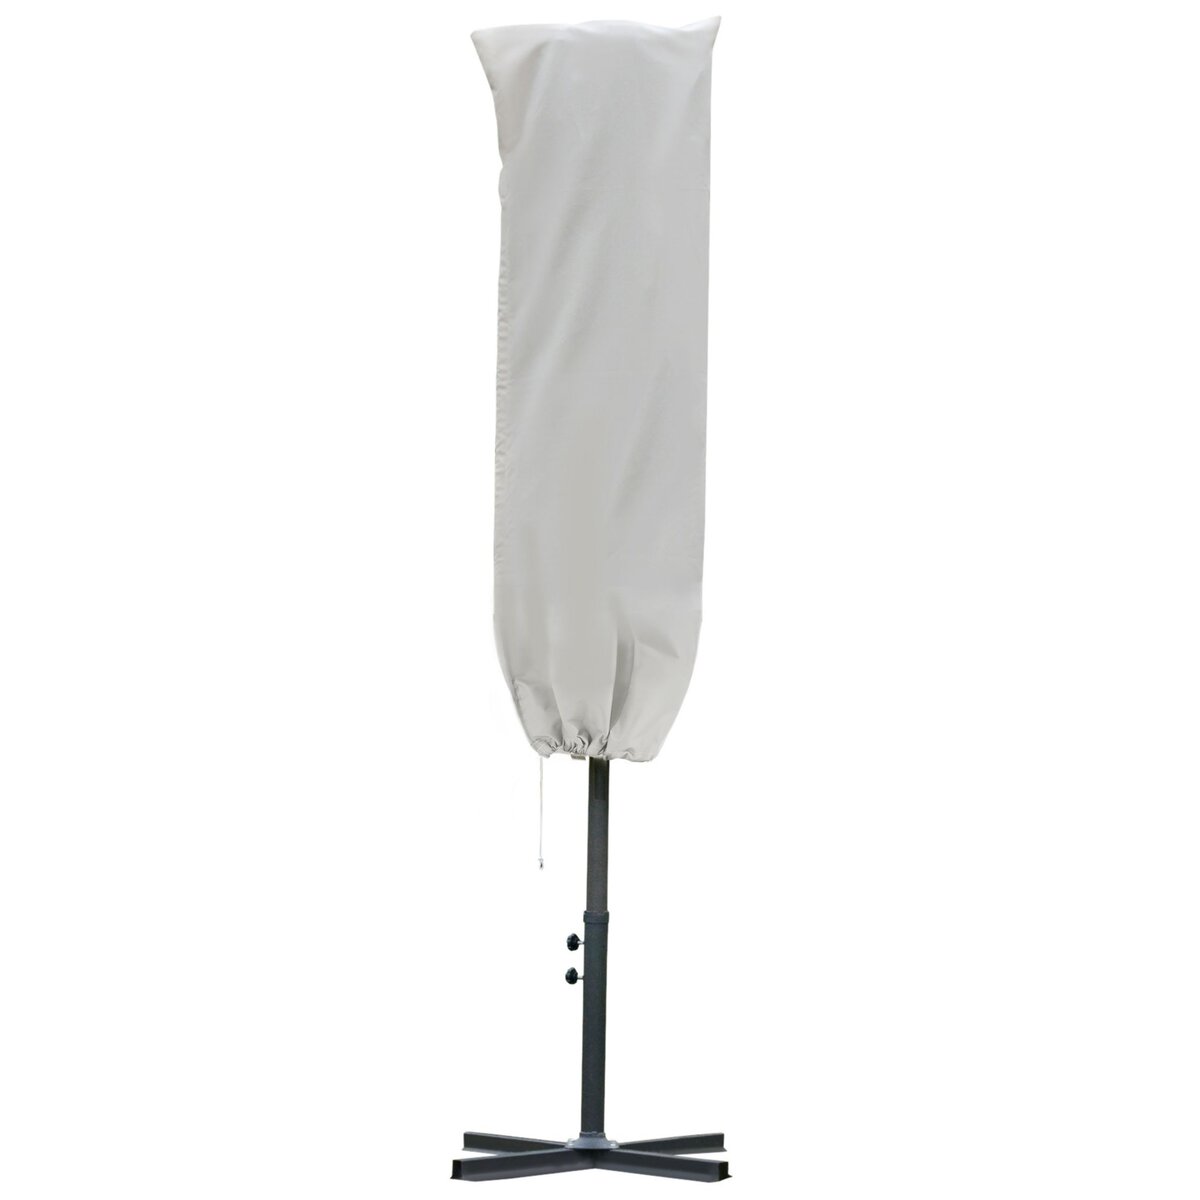 OUTSUNNY Housse de protection imperméable pour parasol droit avec fermeture éclair et cordon de serrage polyester oxford crème